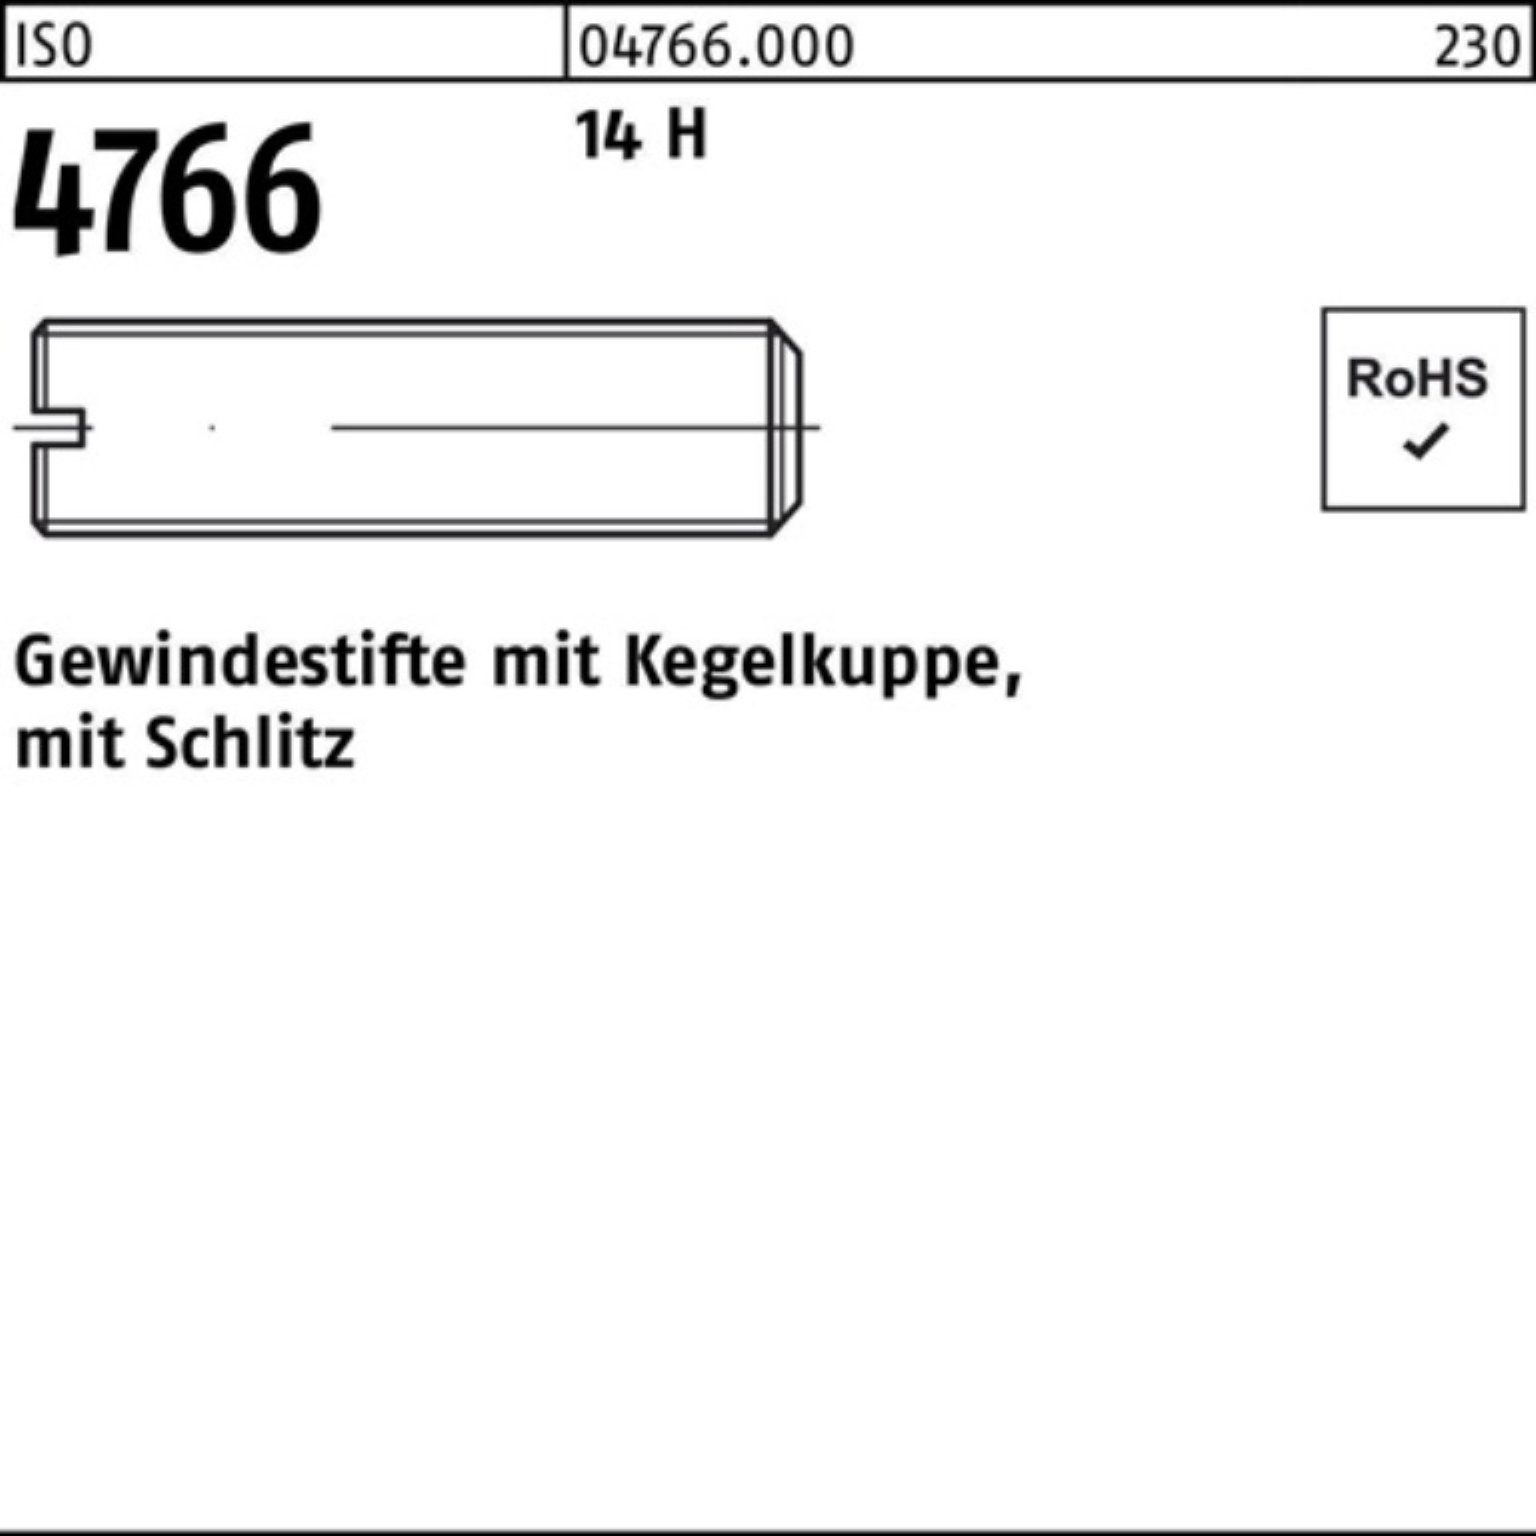 14 10 1000 M5x 1000er Pack Gewindebolzen ISO Kegelkuppe/Schlitz H Gewindestift 4766 Reyher